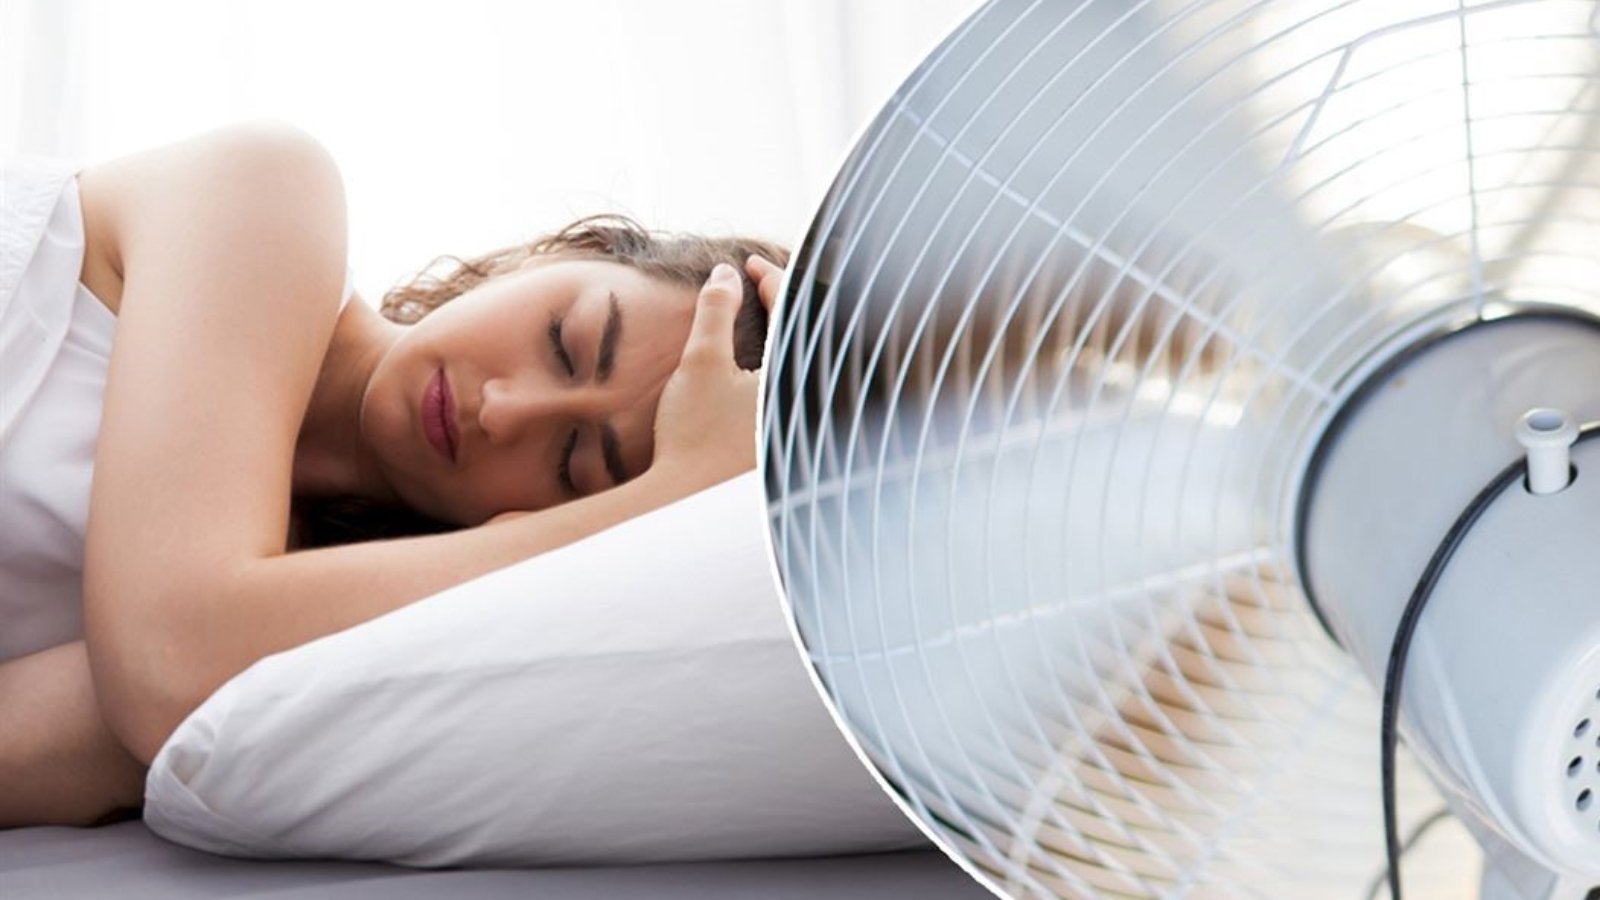 dificuldades-para-dormir-calor-ventilador-ar-condicionado-dr-daniel-benitti-cirurgiao-vascular-sao-paulo-campinas